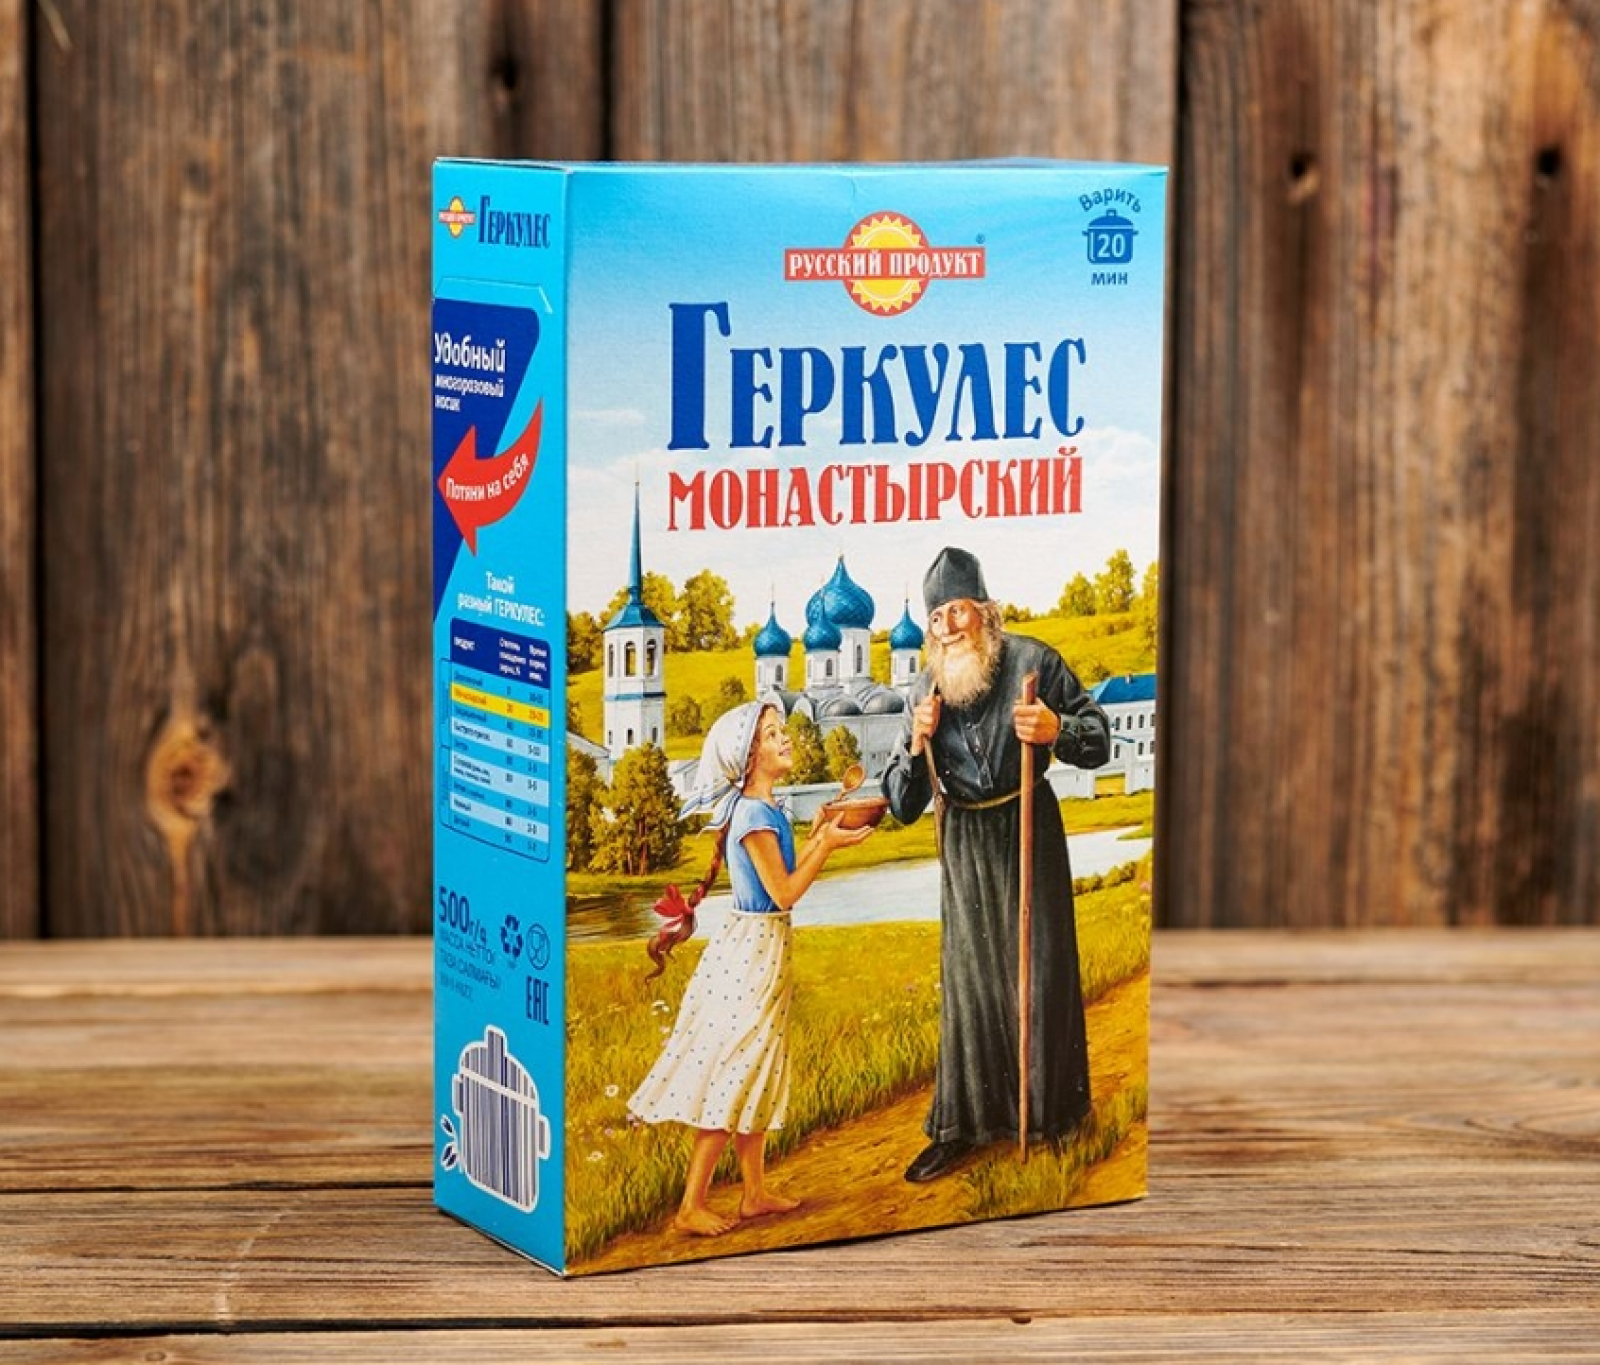 Русский продукт овсяные хлопья Геркулес монастырский